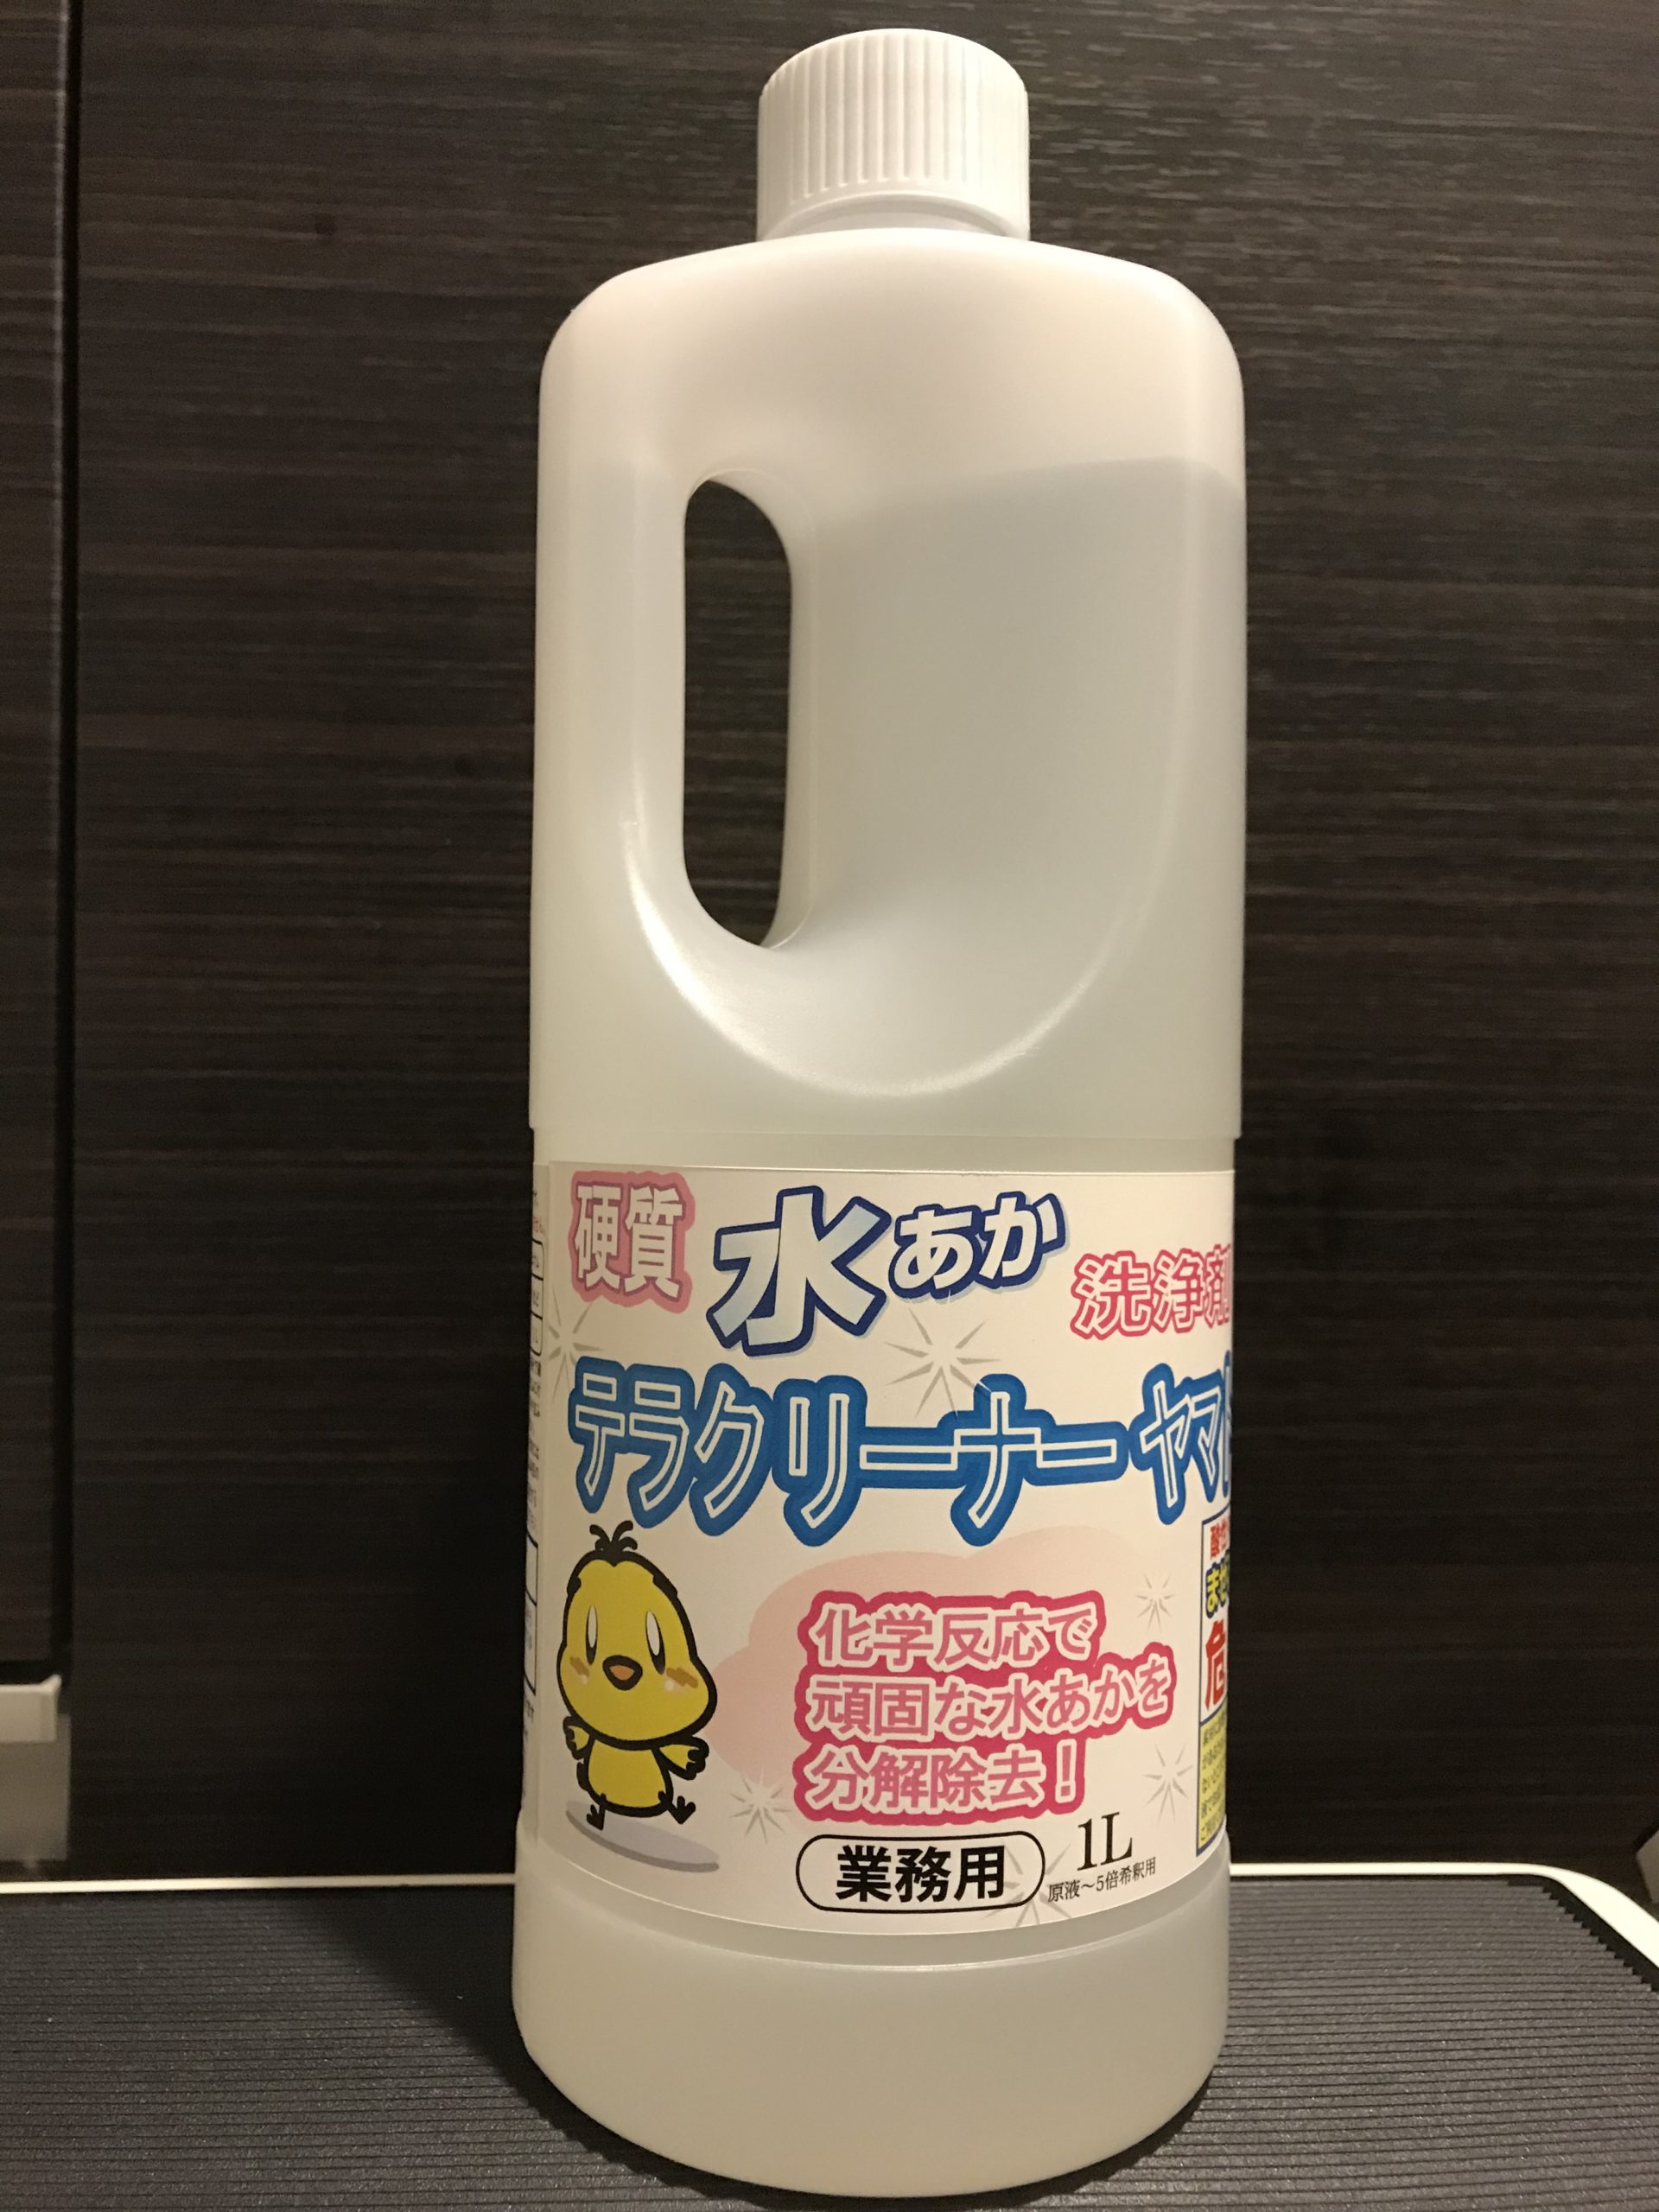 なかなか落ちない水垢に効く水垢取り剤 Wazamame Blog 技豆ブログ